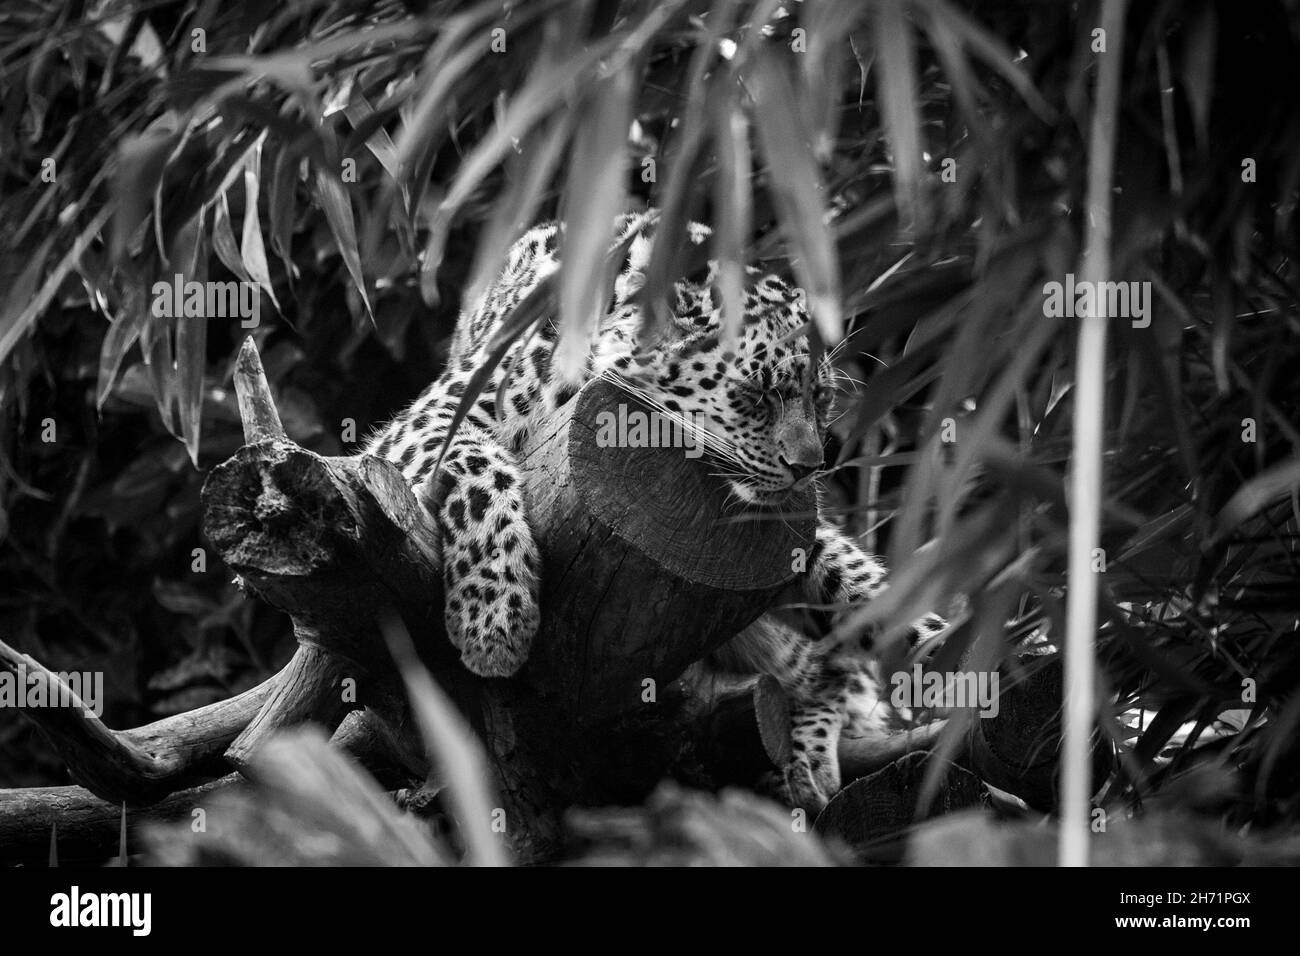 Prise de vue en niveaux de gris d'un léopard Banque D'Images